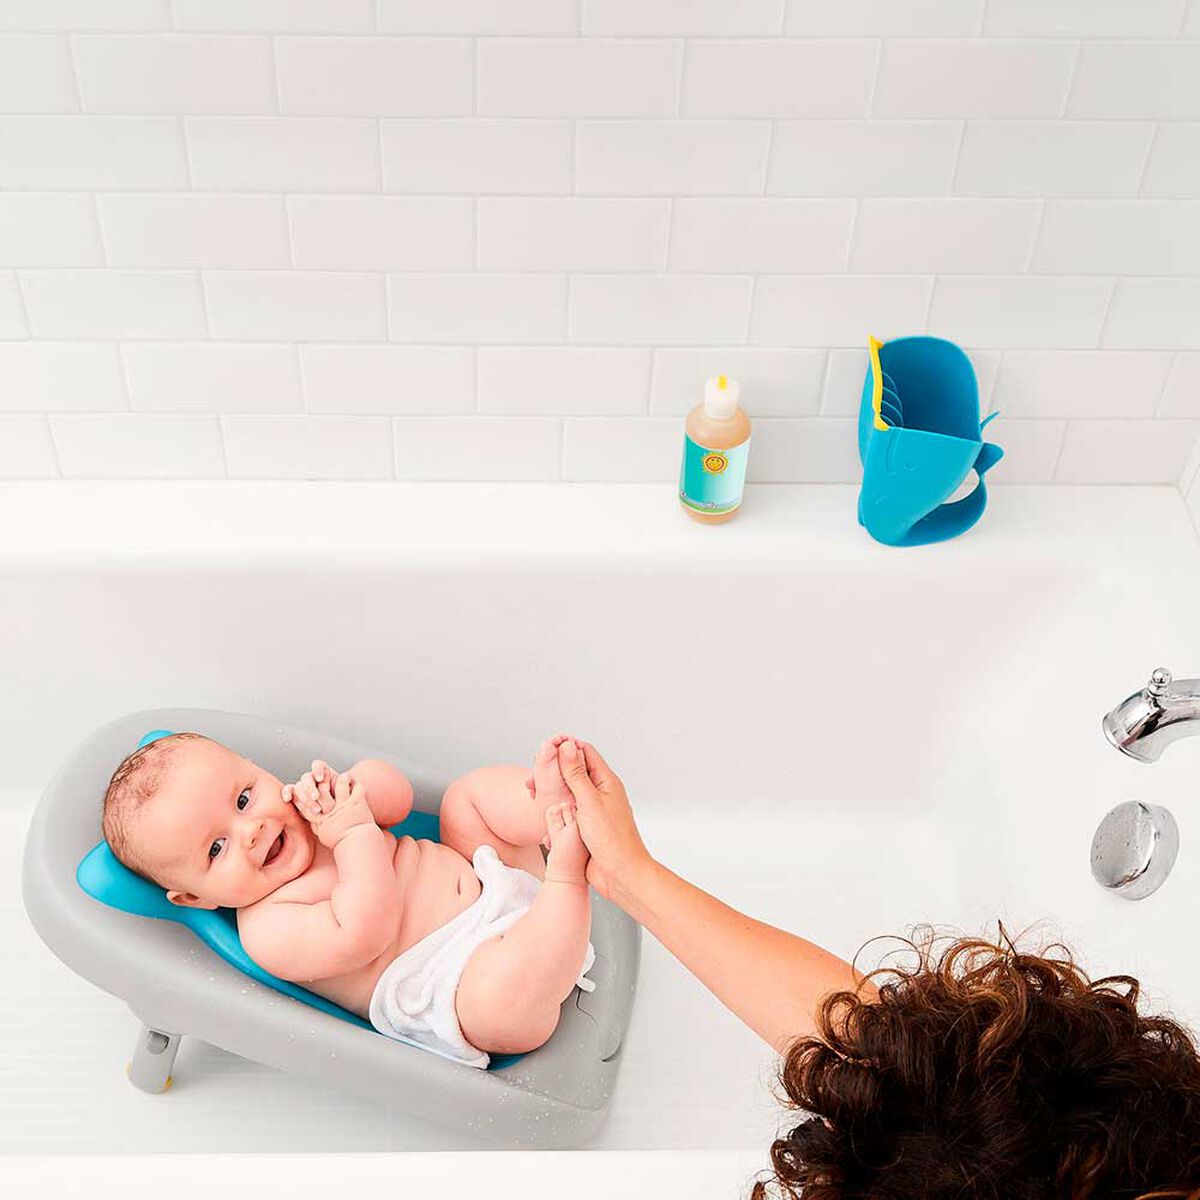 Hamaca Bañera para Bebe: Seguridad y Confort en el Baño